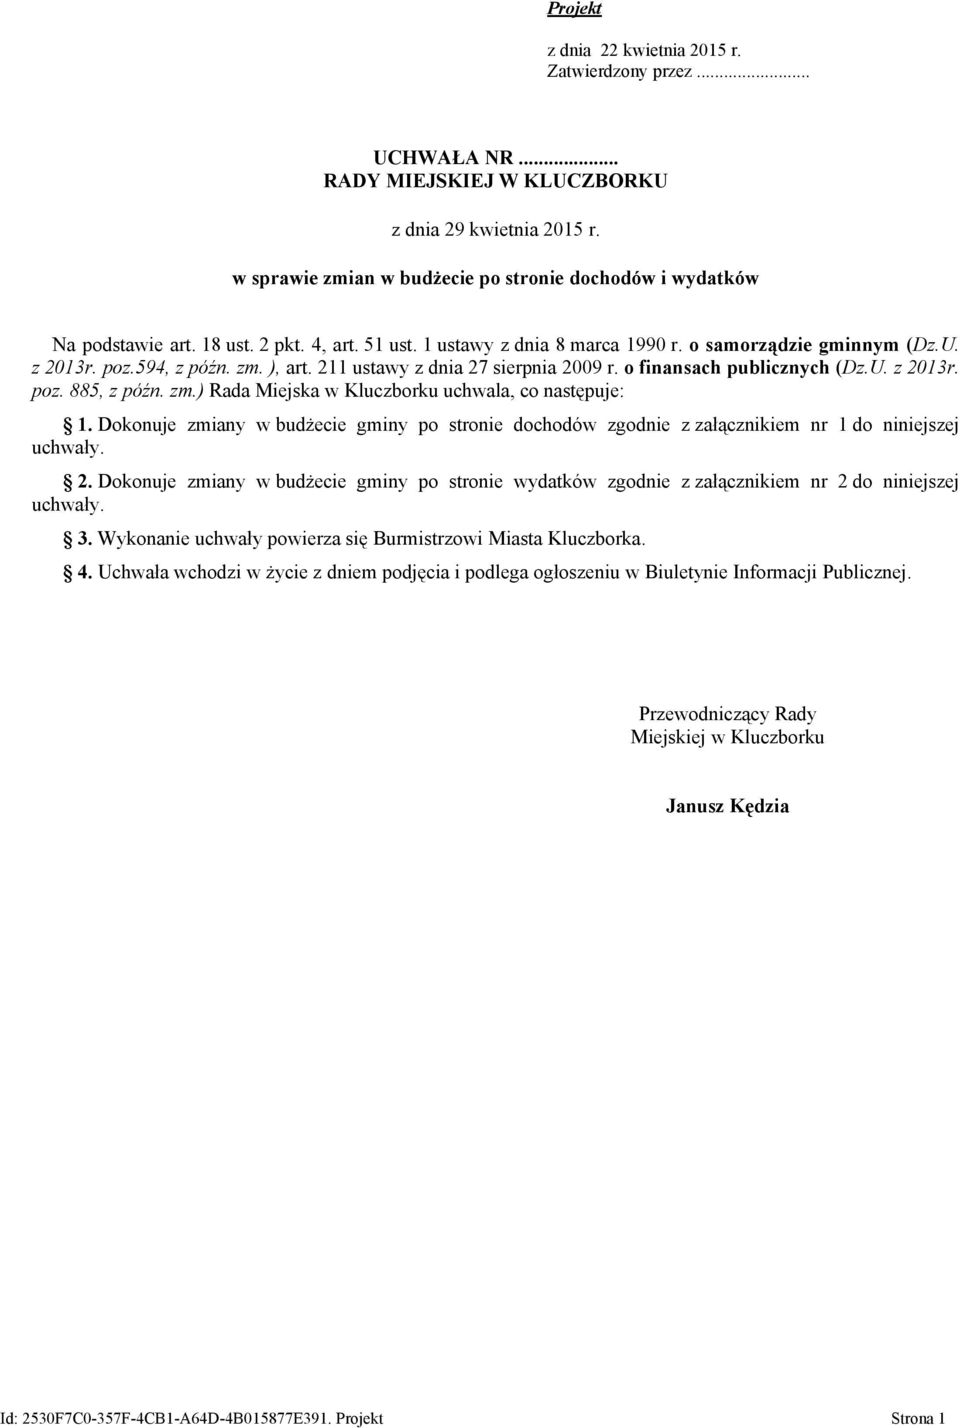 211 ustawy z dnia 27 sierpnia 2009 r. o finansach publicznych (Dz.U. z 2013r. poz. 885, z późn. zm.) Rada Miejska w Kluczborku uchwala, co następuje: 1.